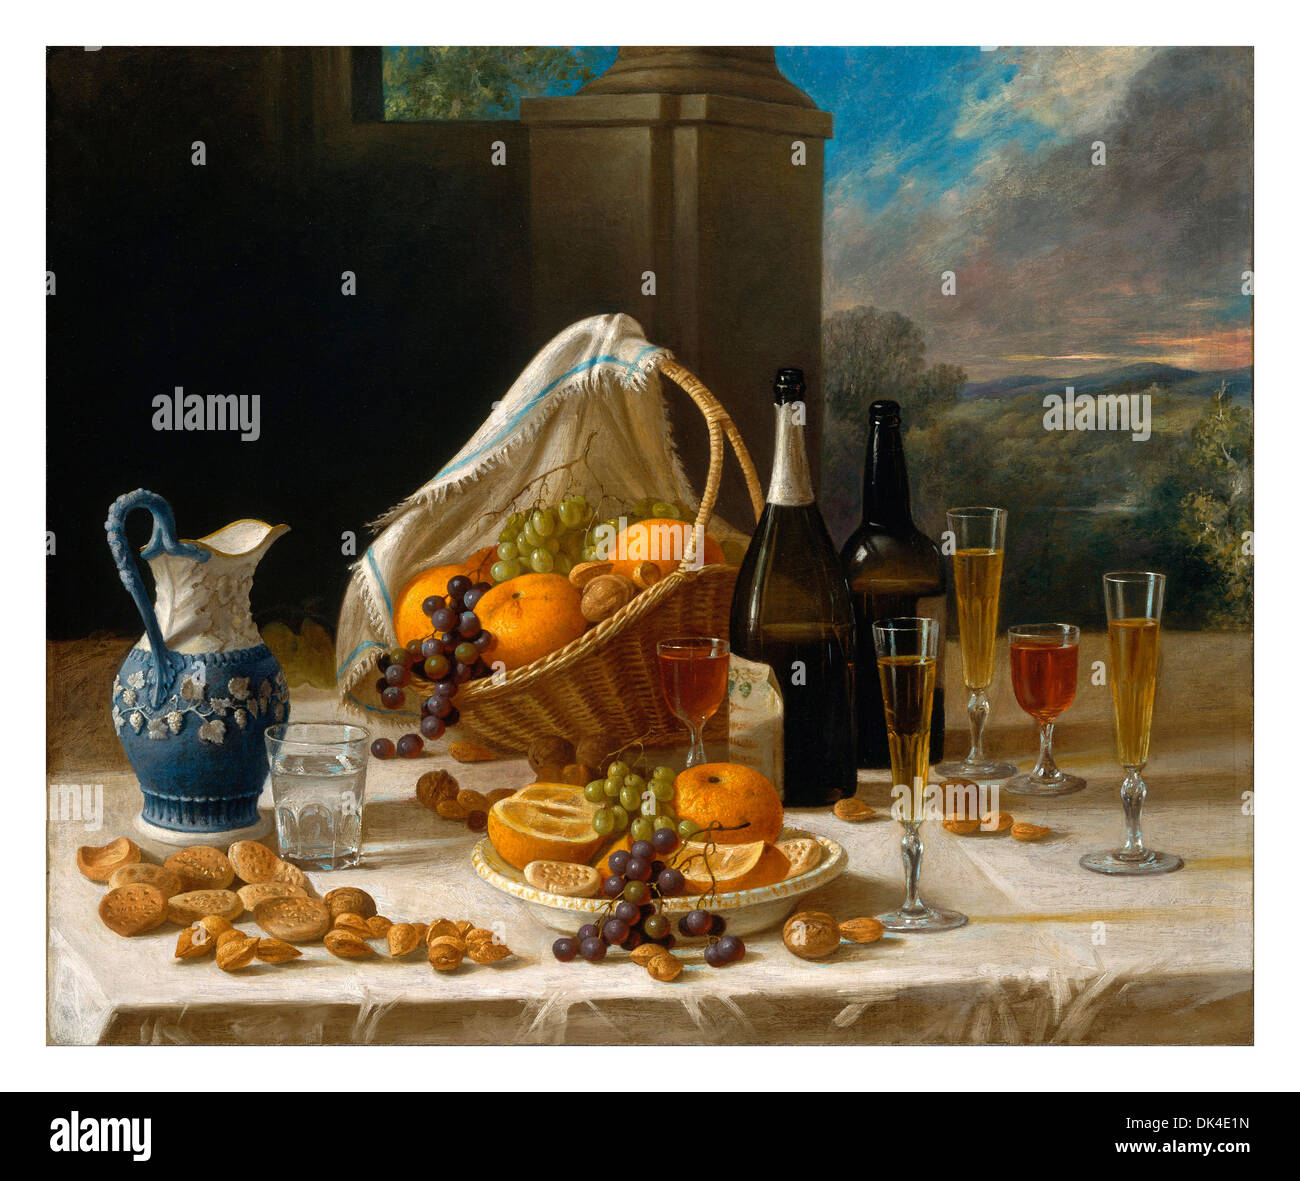 STILLLEBEN WEIN FRÜCHTE Luxus 19. Jahrhundert Tafelspeisen Getränke Ölgemälde von Früchten Weinen Trauben und Nüssen auf einem Tisch eines Herrenhauses Stockfoto